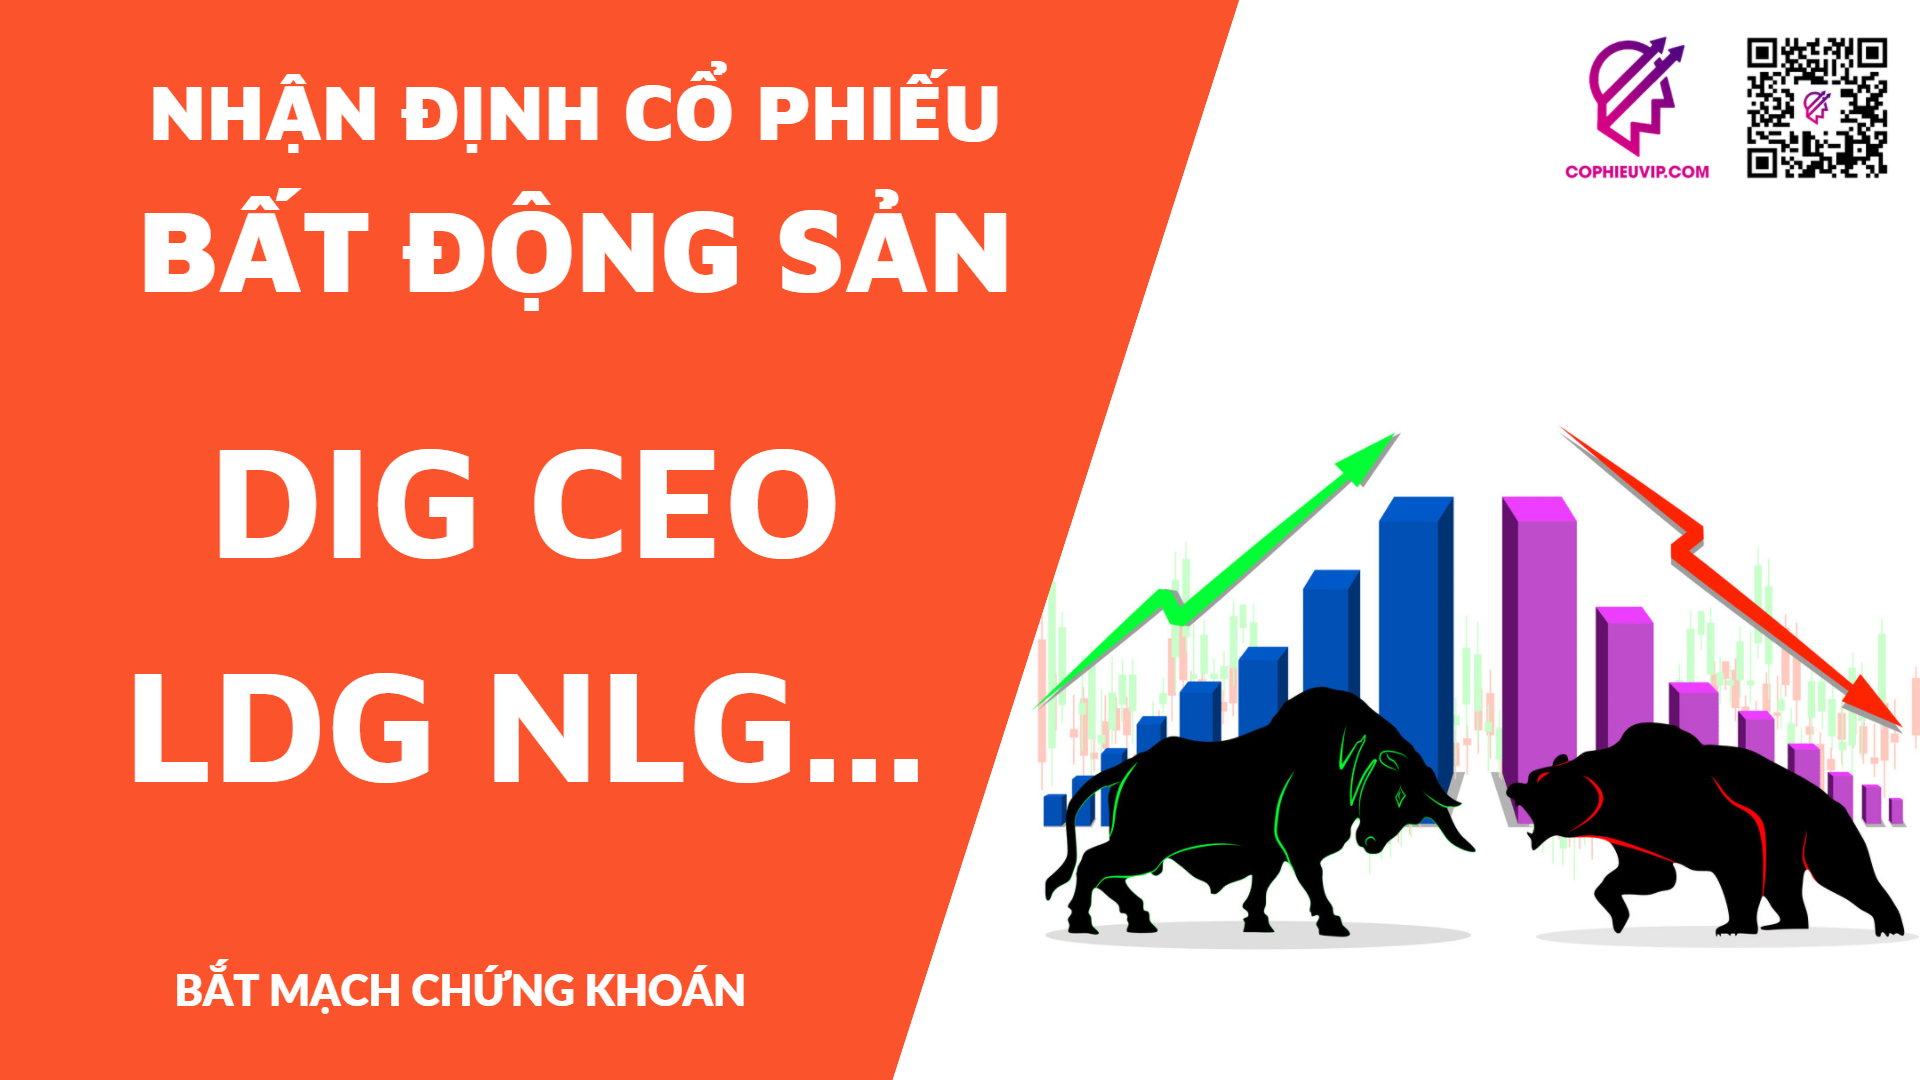 Nhận định cổ phiếu Bất Động Sản: DIG CEO LDG NLG L14